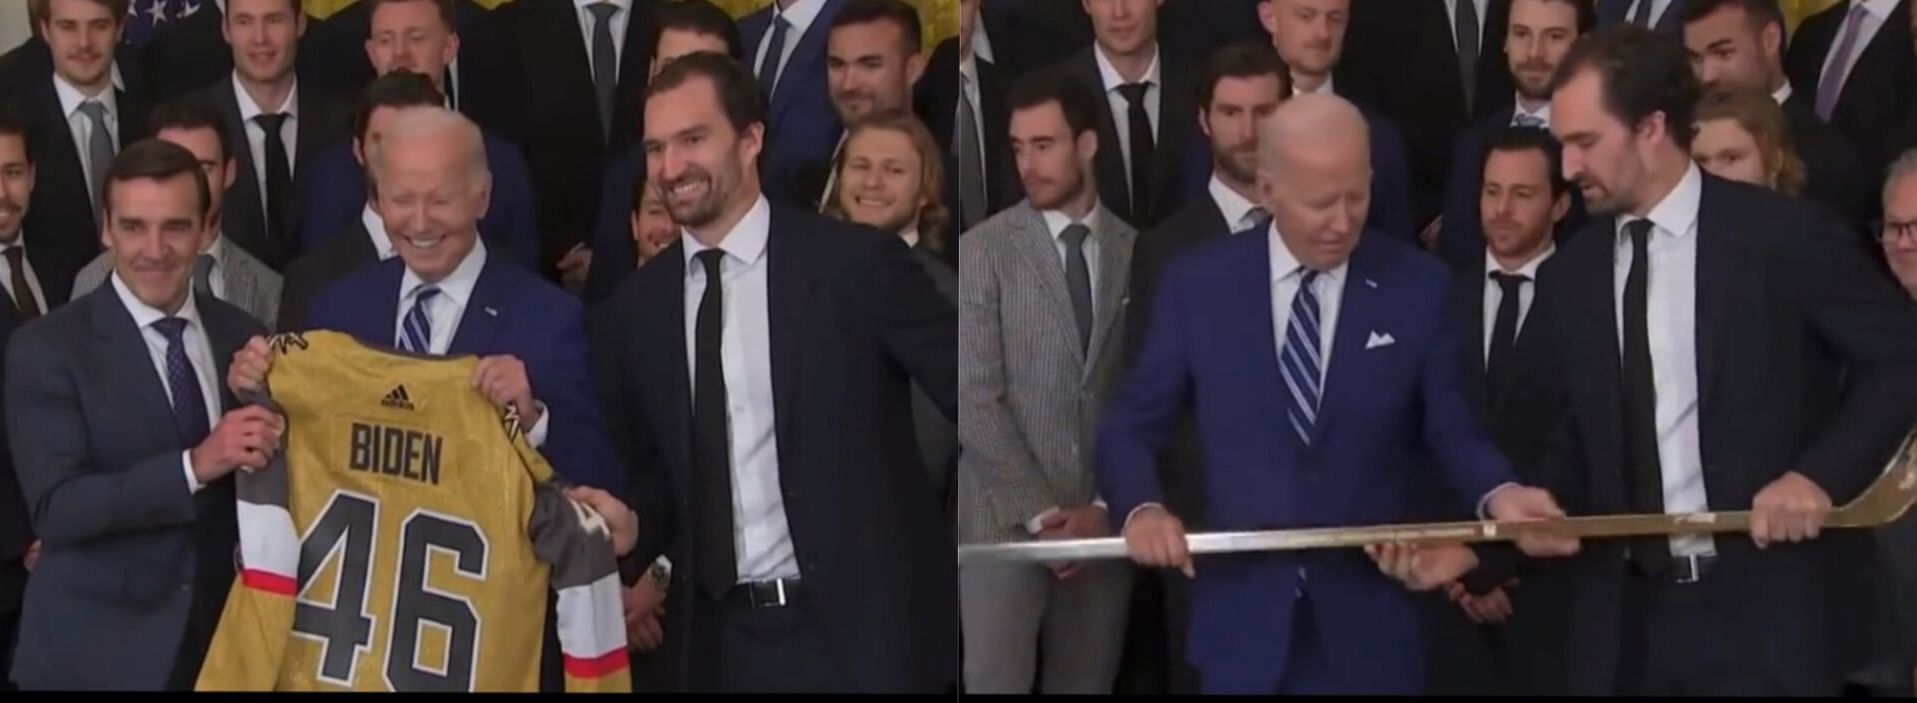 Joe Biden receives jersey and golden hockey stick 